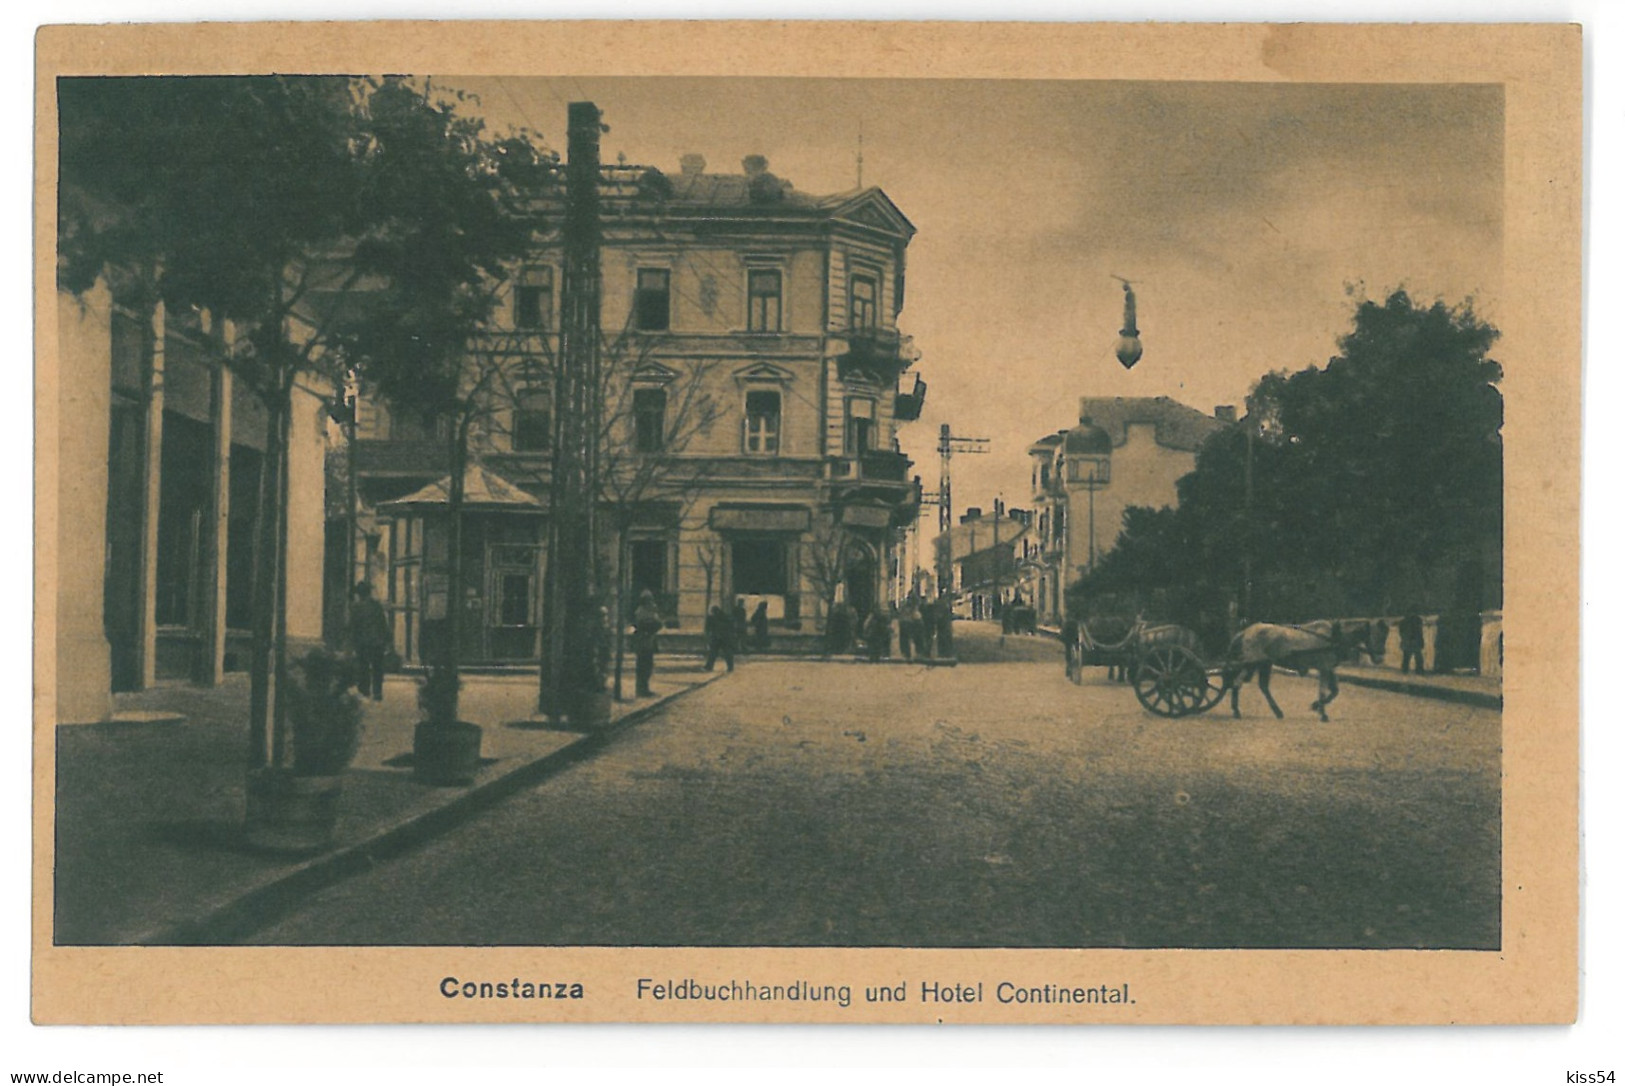 RO 72 - 12782 CONSTANTA, Hotel Continental, Romania - Old Postcard - Used - 1918 - Rumänien